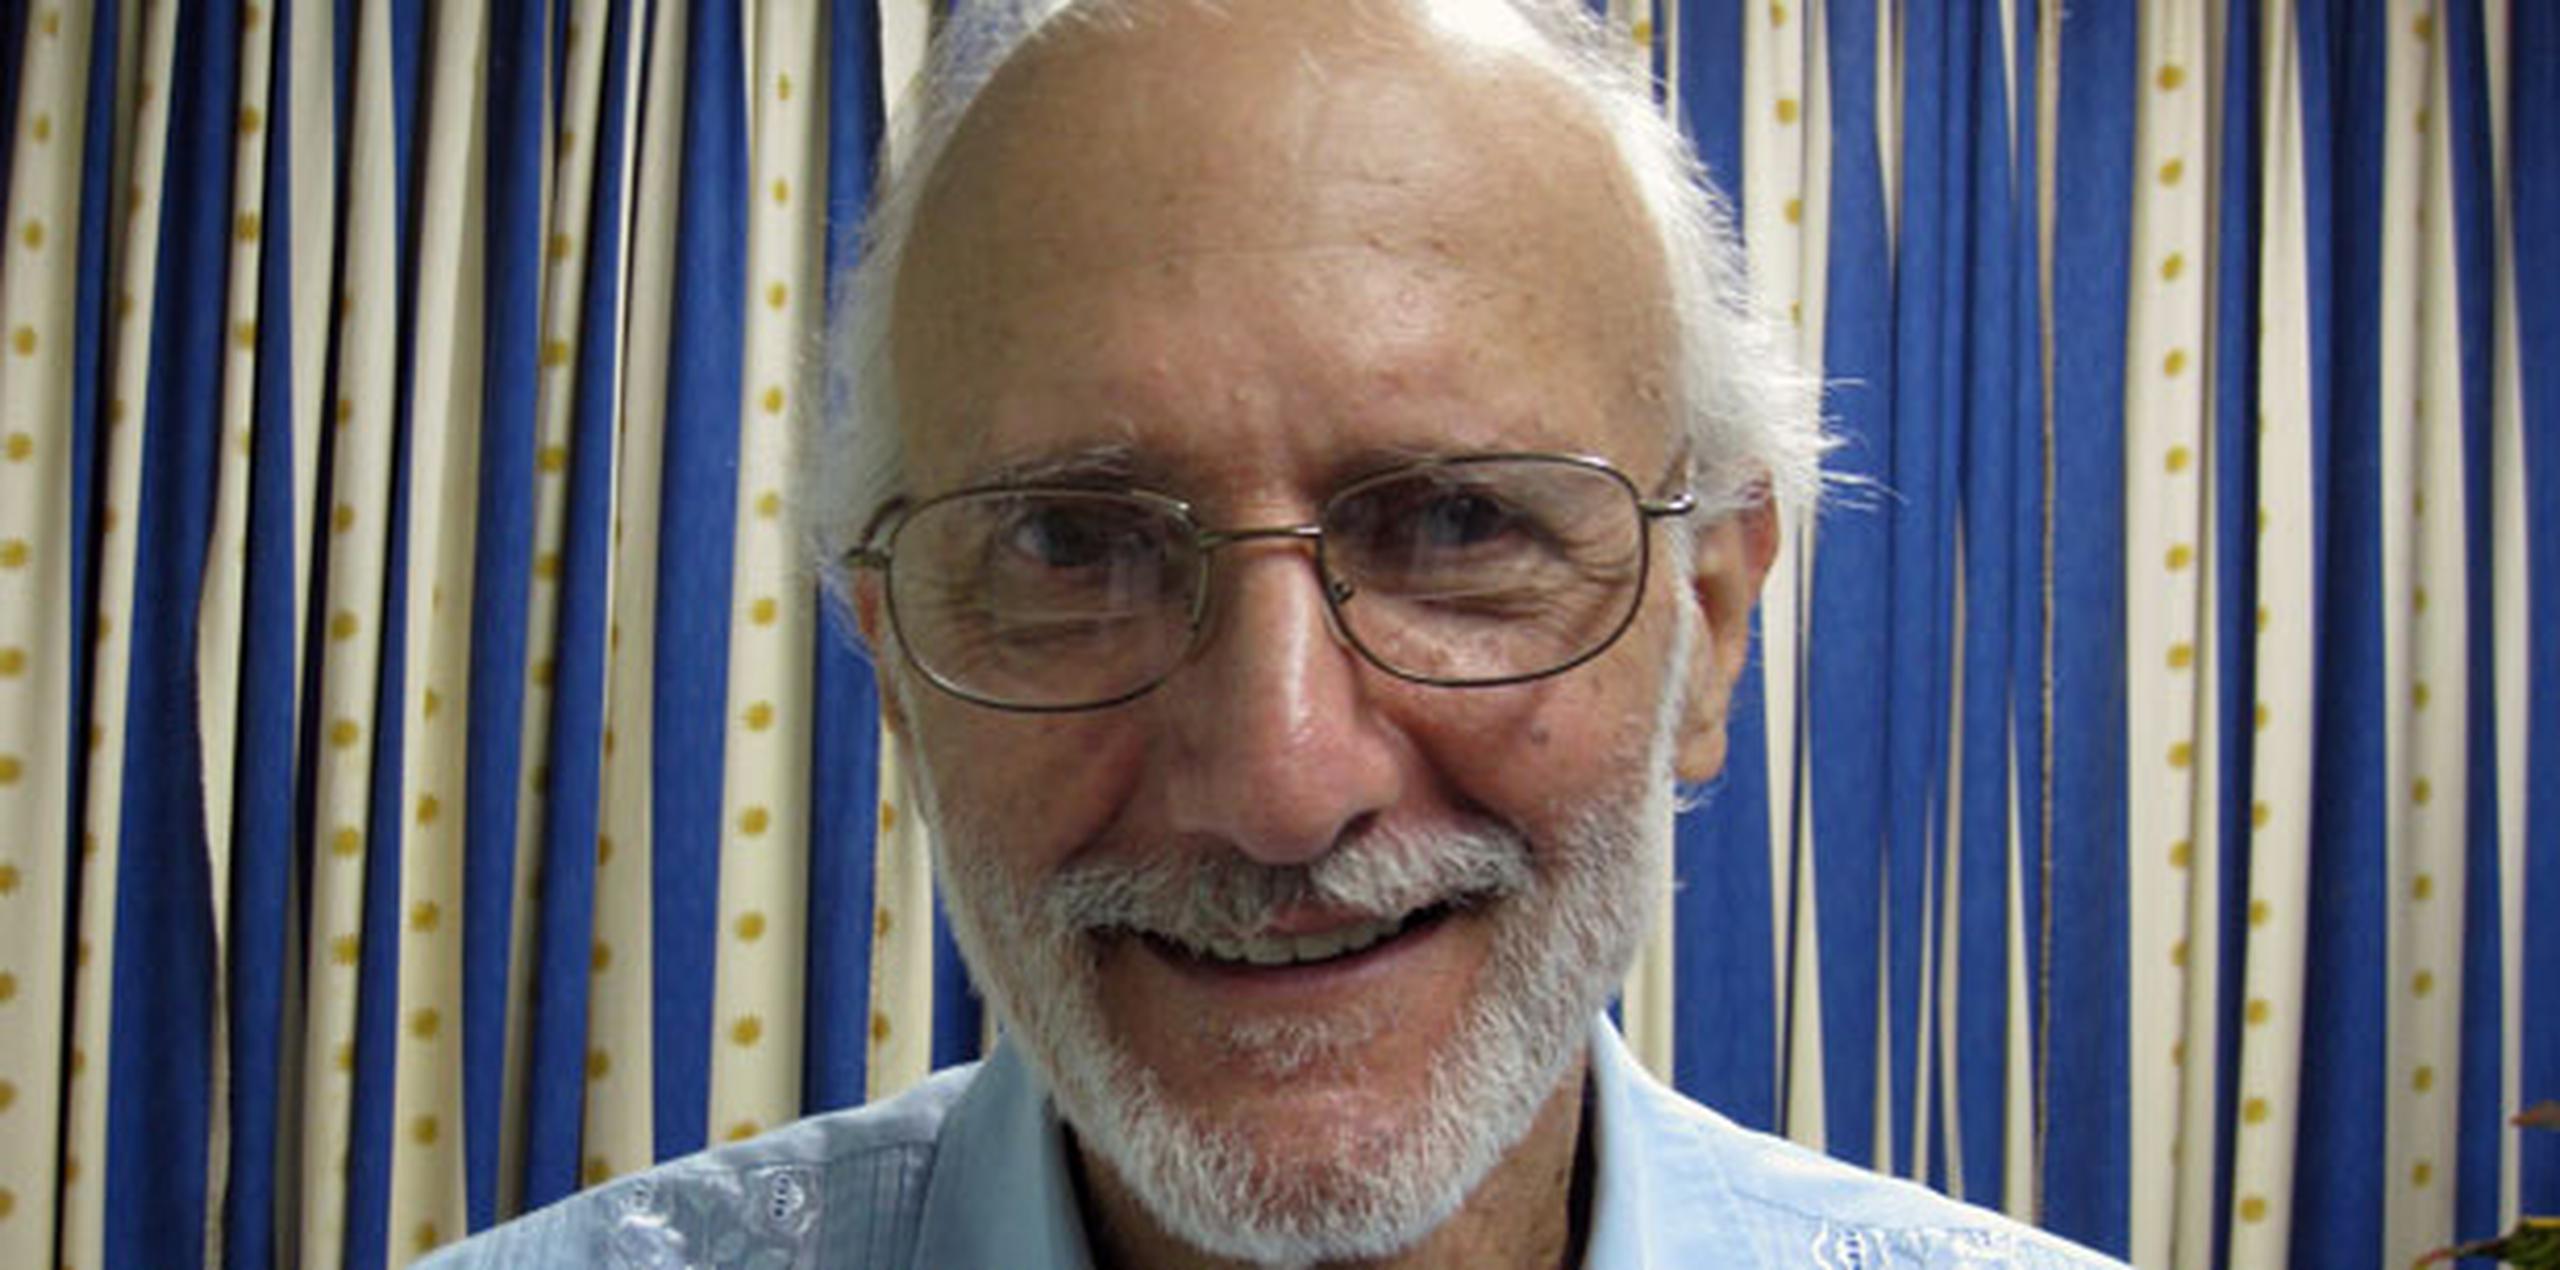 Alan Gross fue liberado por razones humanitarias por el gobierno cubano a solicitud de Estados Unidos, agregó el funcionario. (Archivo)